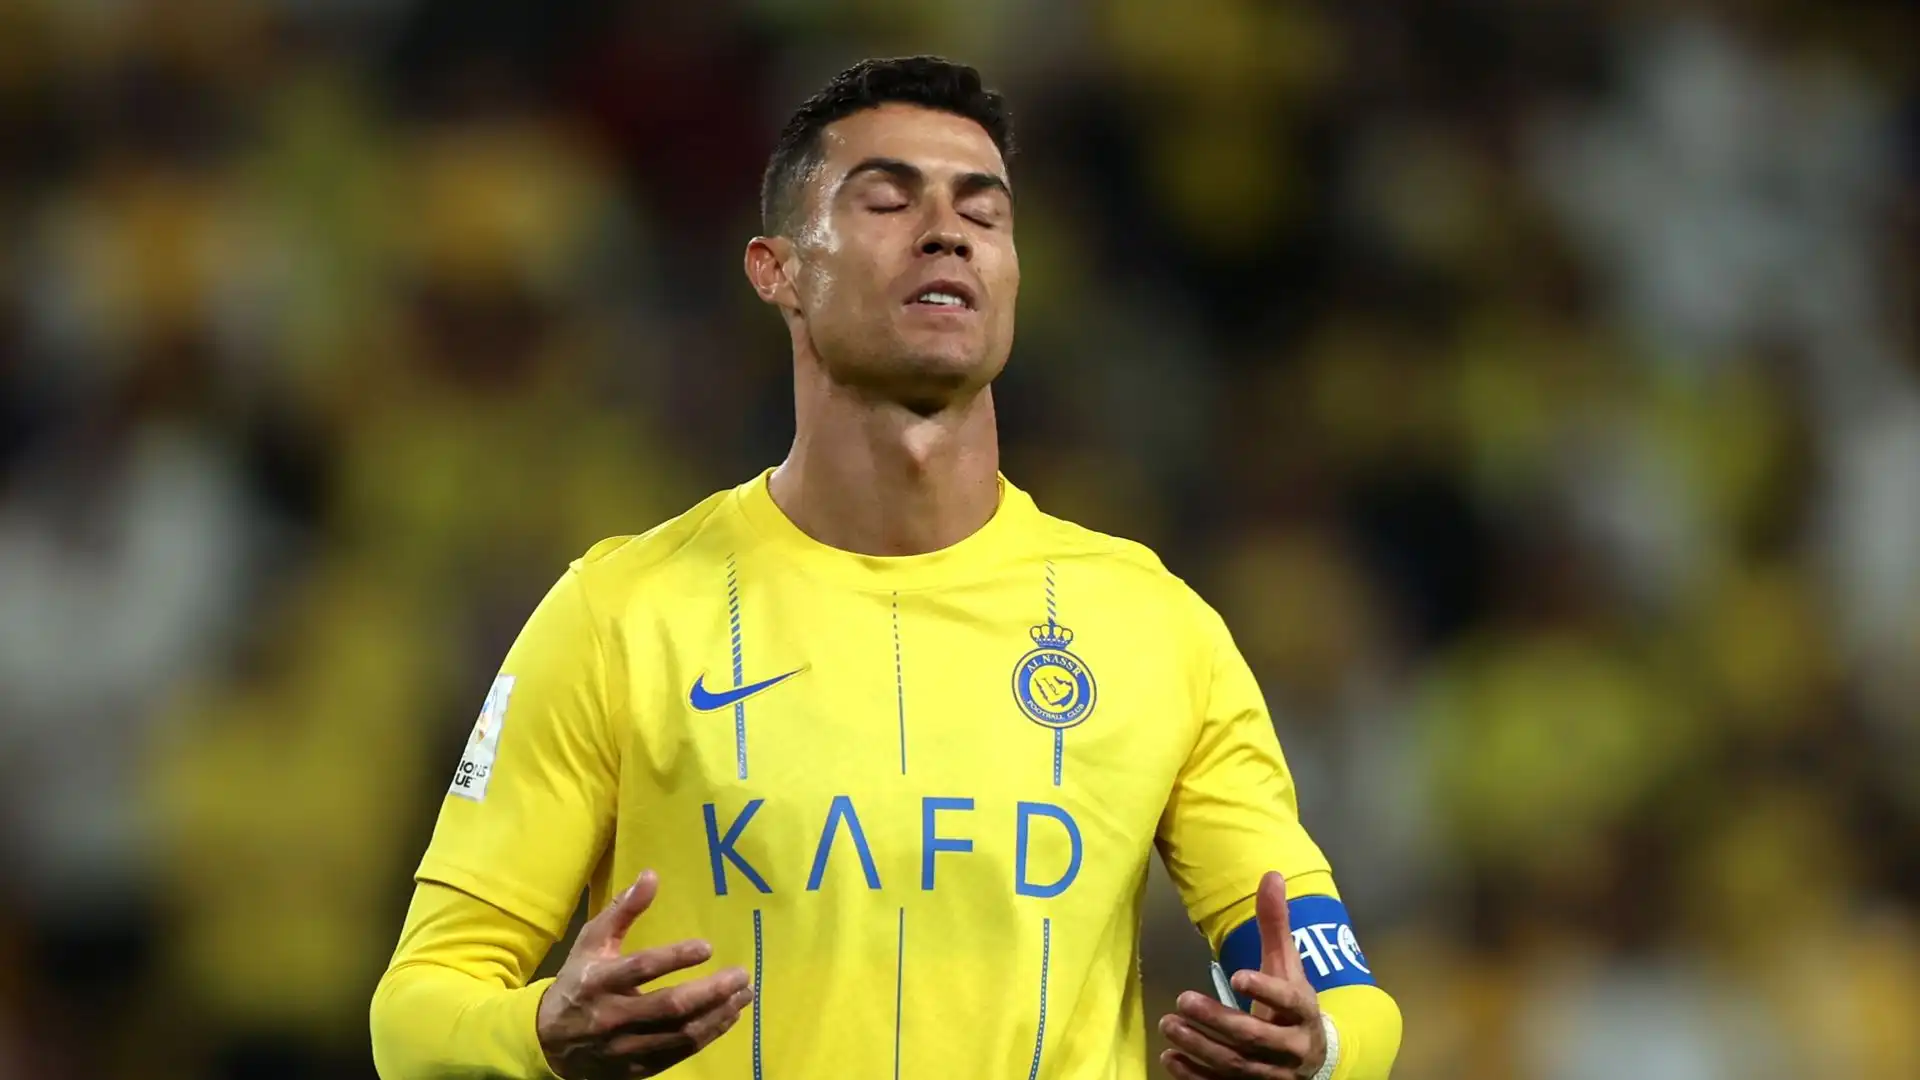 Dal dischetto Ronaldo è stato infallibile ma è poi stato tradito dai compagni